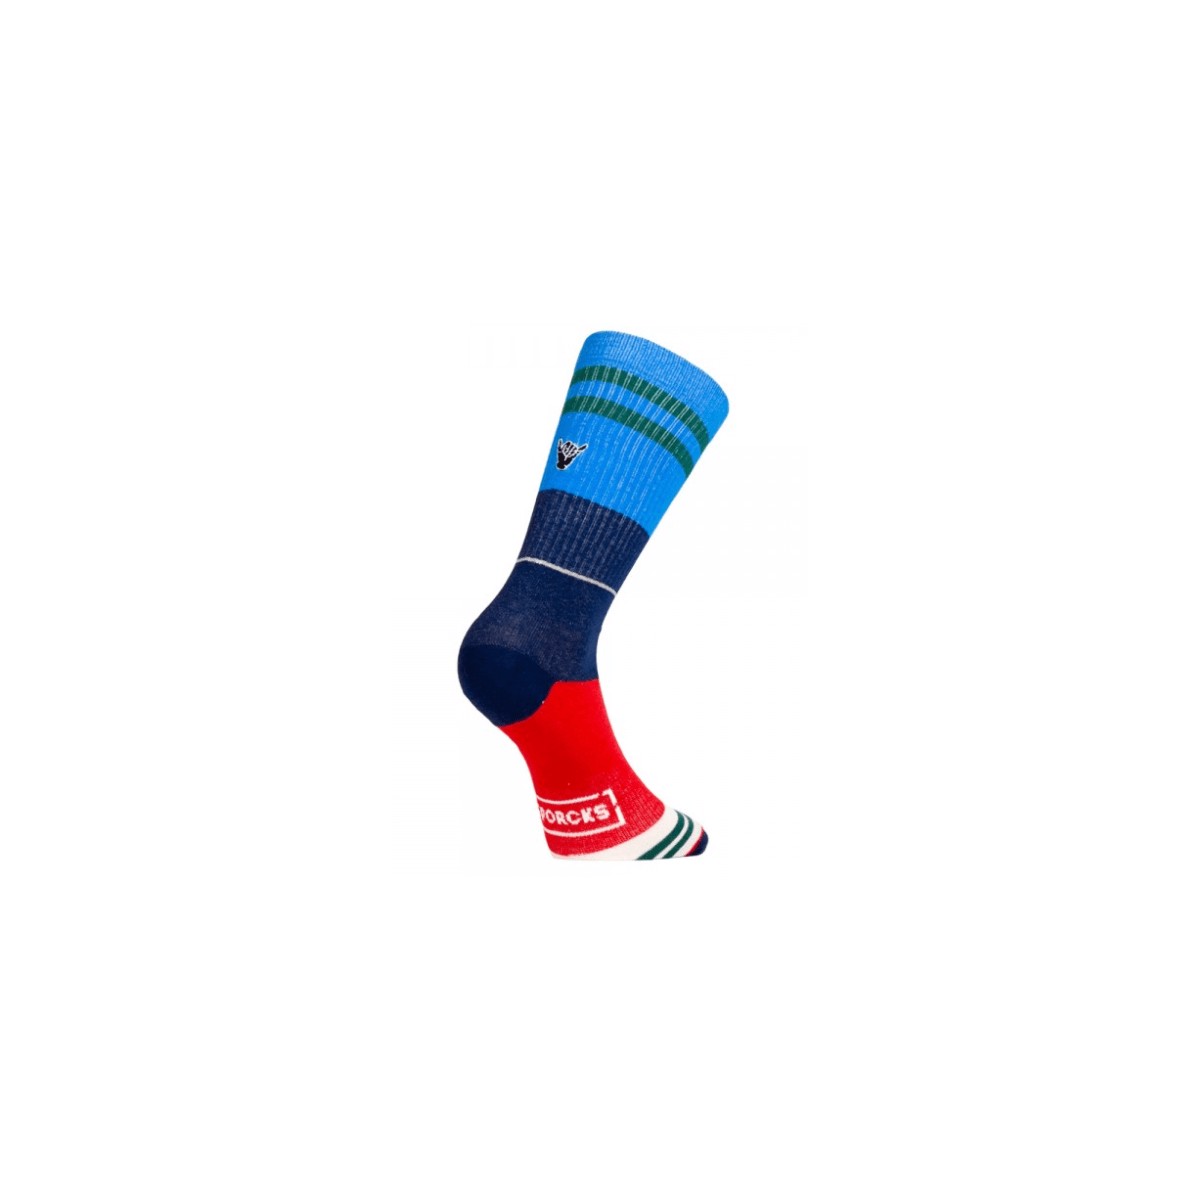 MACHEN günstig Kaufen-Sporcks Casual Day Off Blaue Socken, Größe S. Sporcks Casual Day Off Blaue Socken, Größe S <![CDATA[Sporcks Casual Day Off Blaue Socken Lässige Linie für den Alltag. Dünn, bequem und atmungsaktiv machen sie die perfekte Socke für a